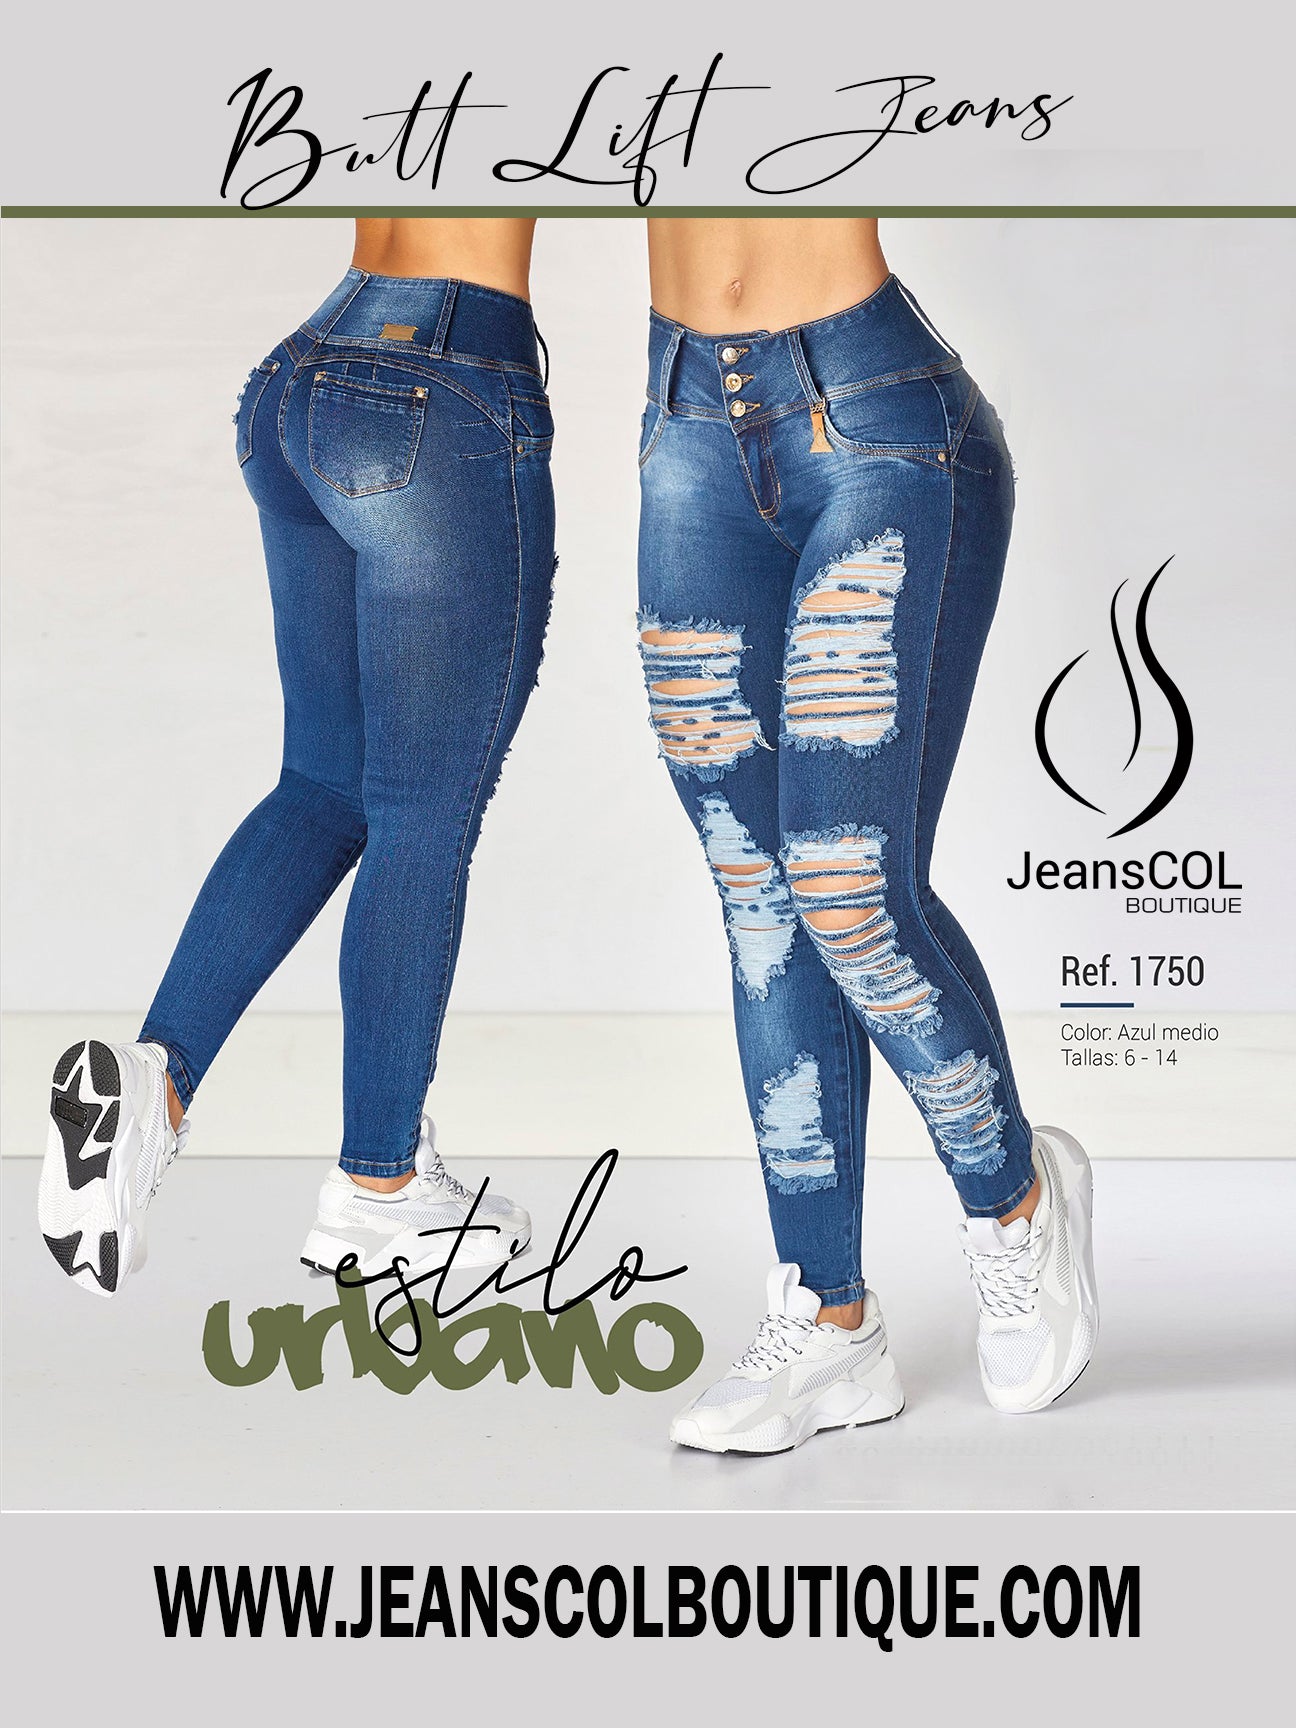 JeansCol Boutique Jeans y Fajas